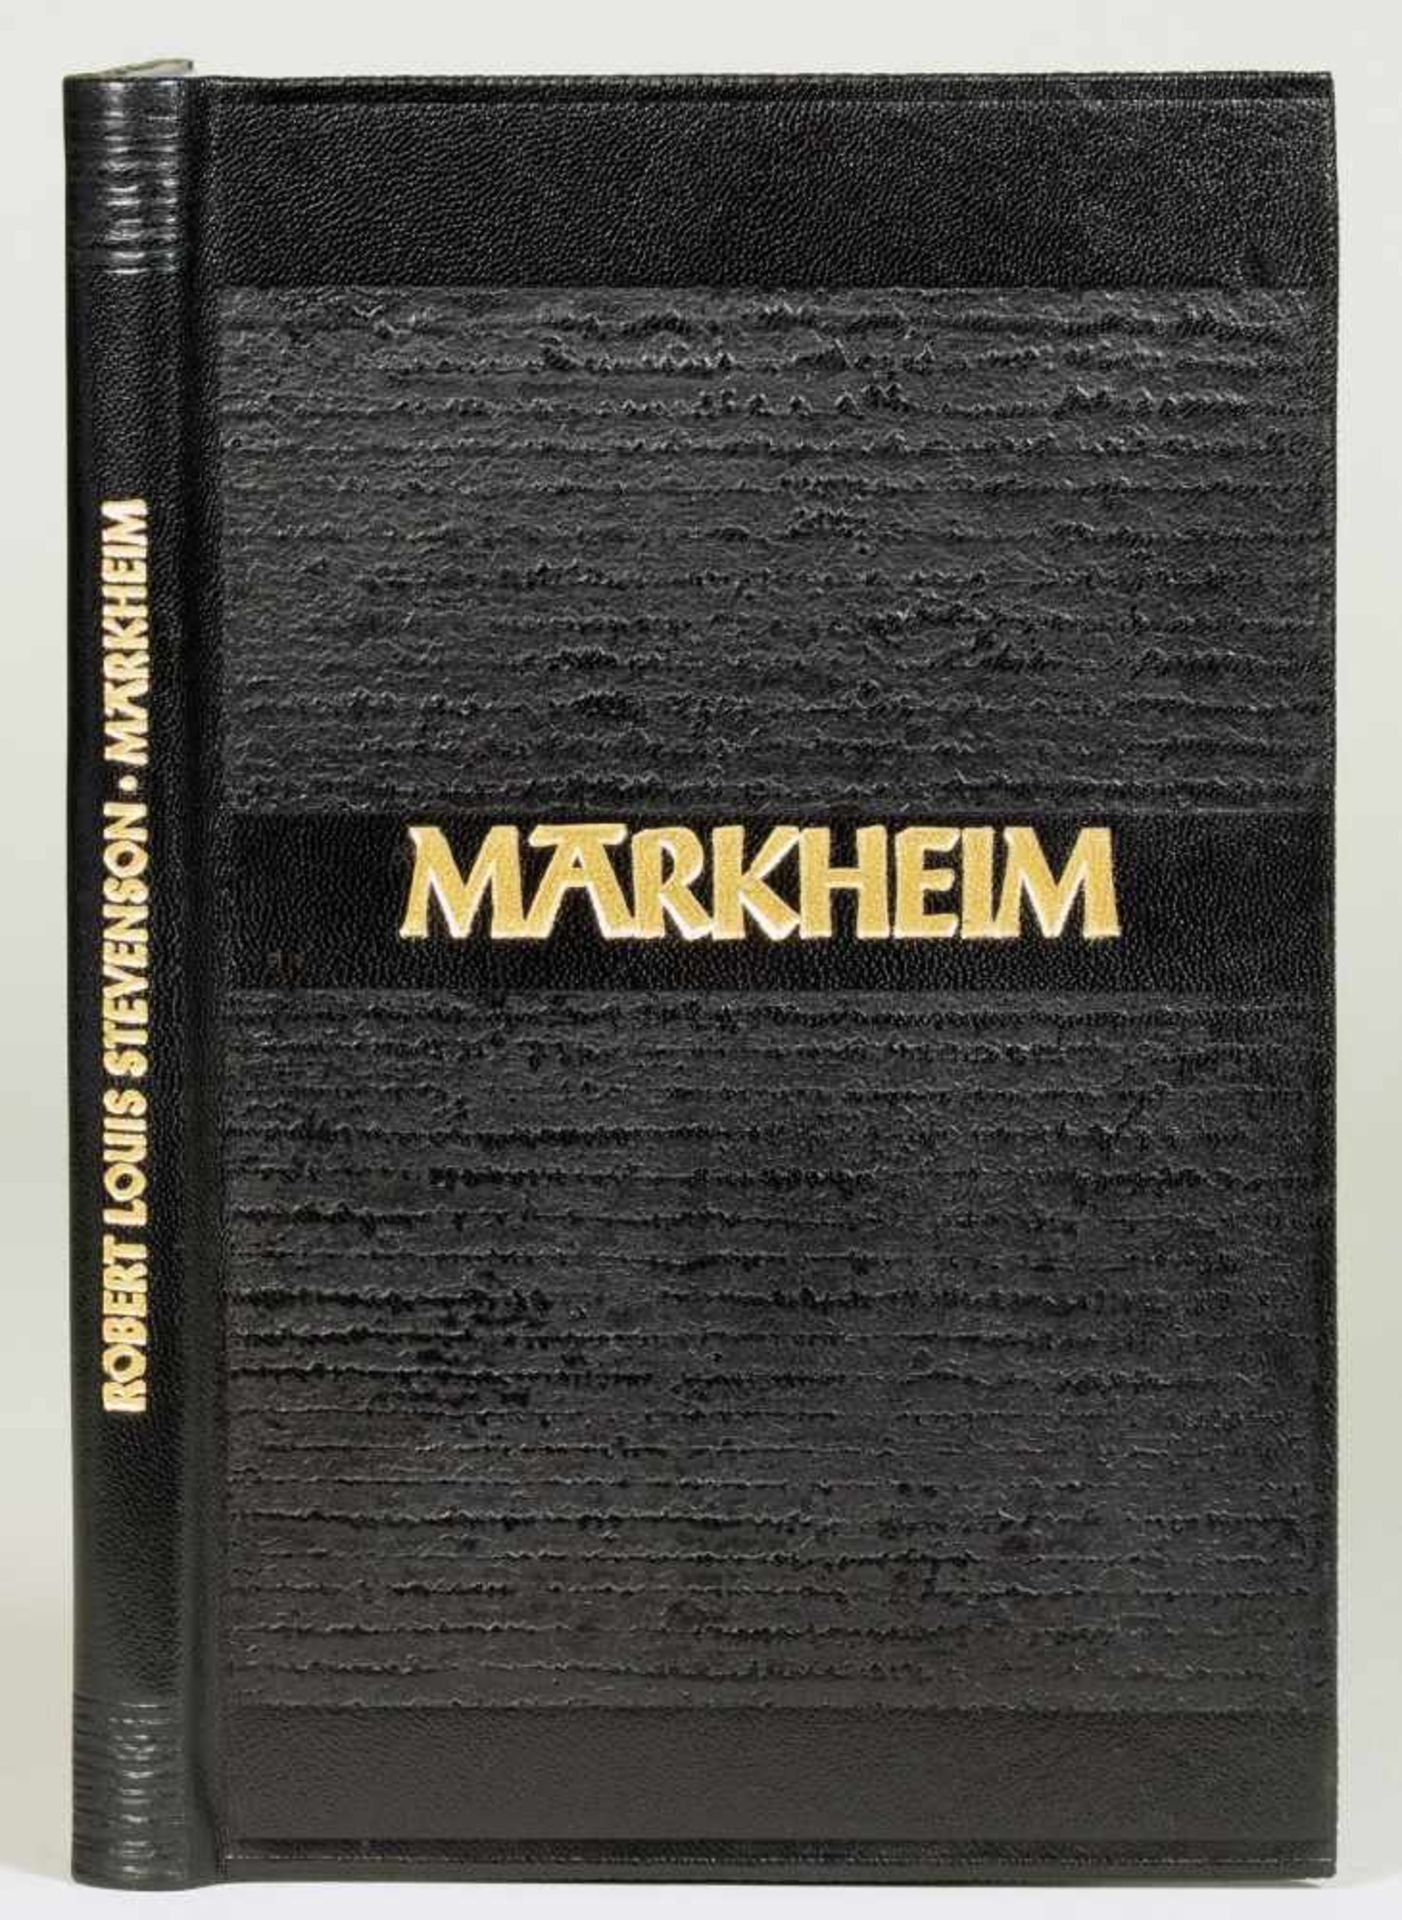 The Bear Press - Robert Louis Stevenson. Markheim. Radierungen von Hubert Sommerauer. Bayreuth 1993.